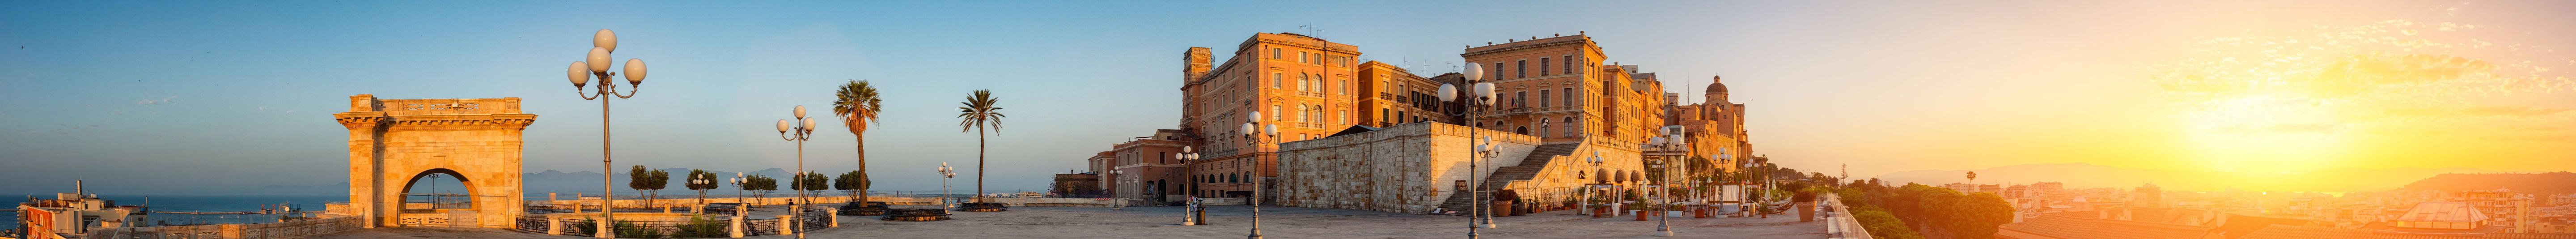 Cagliari: tra arte e cultura